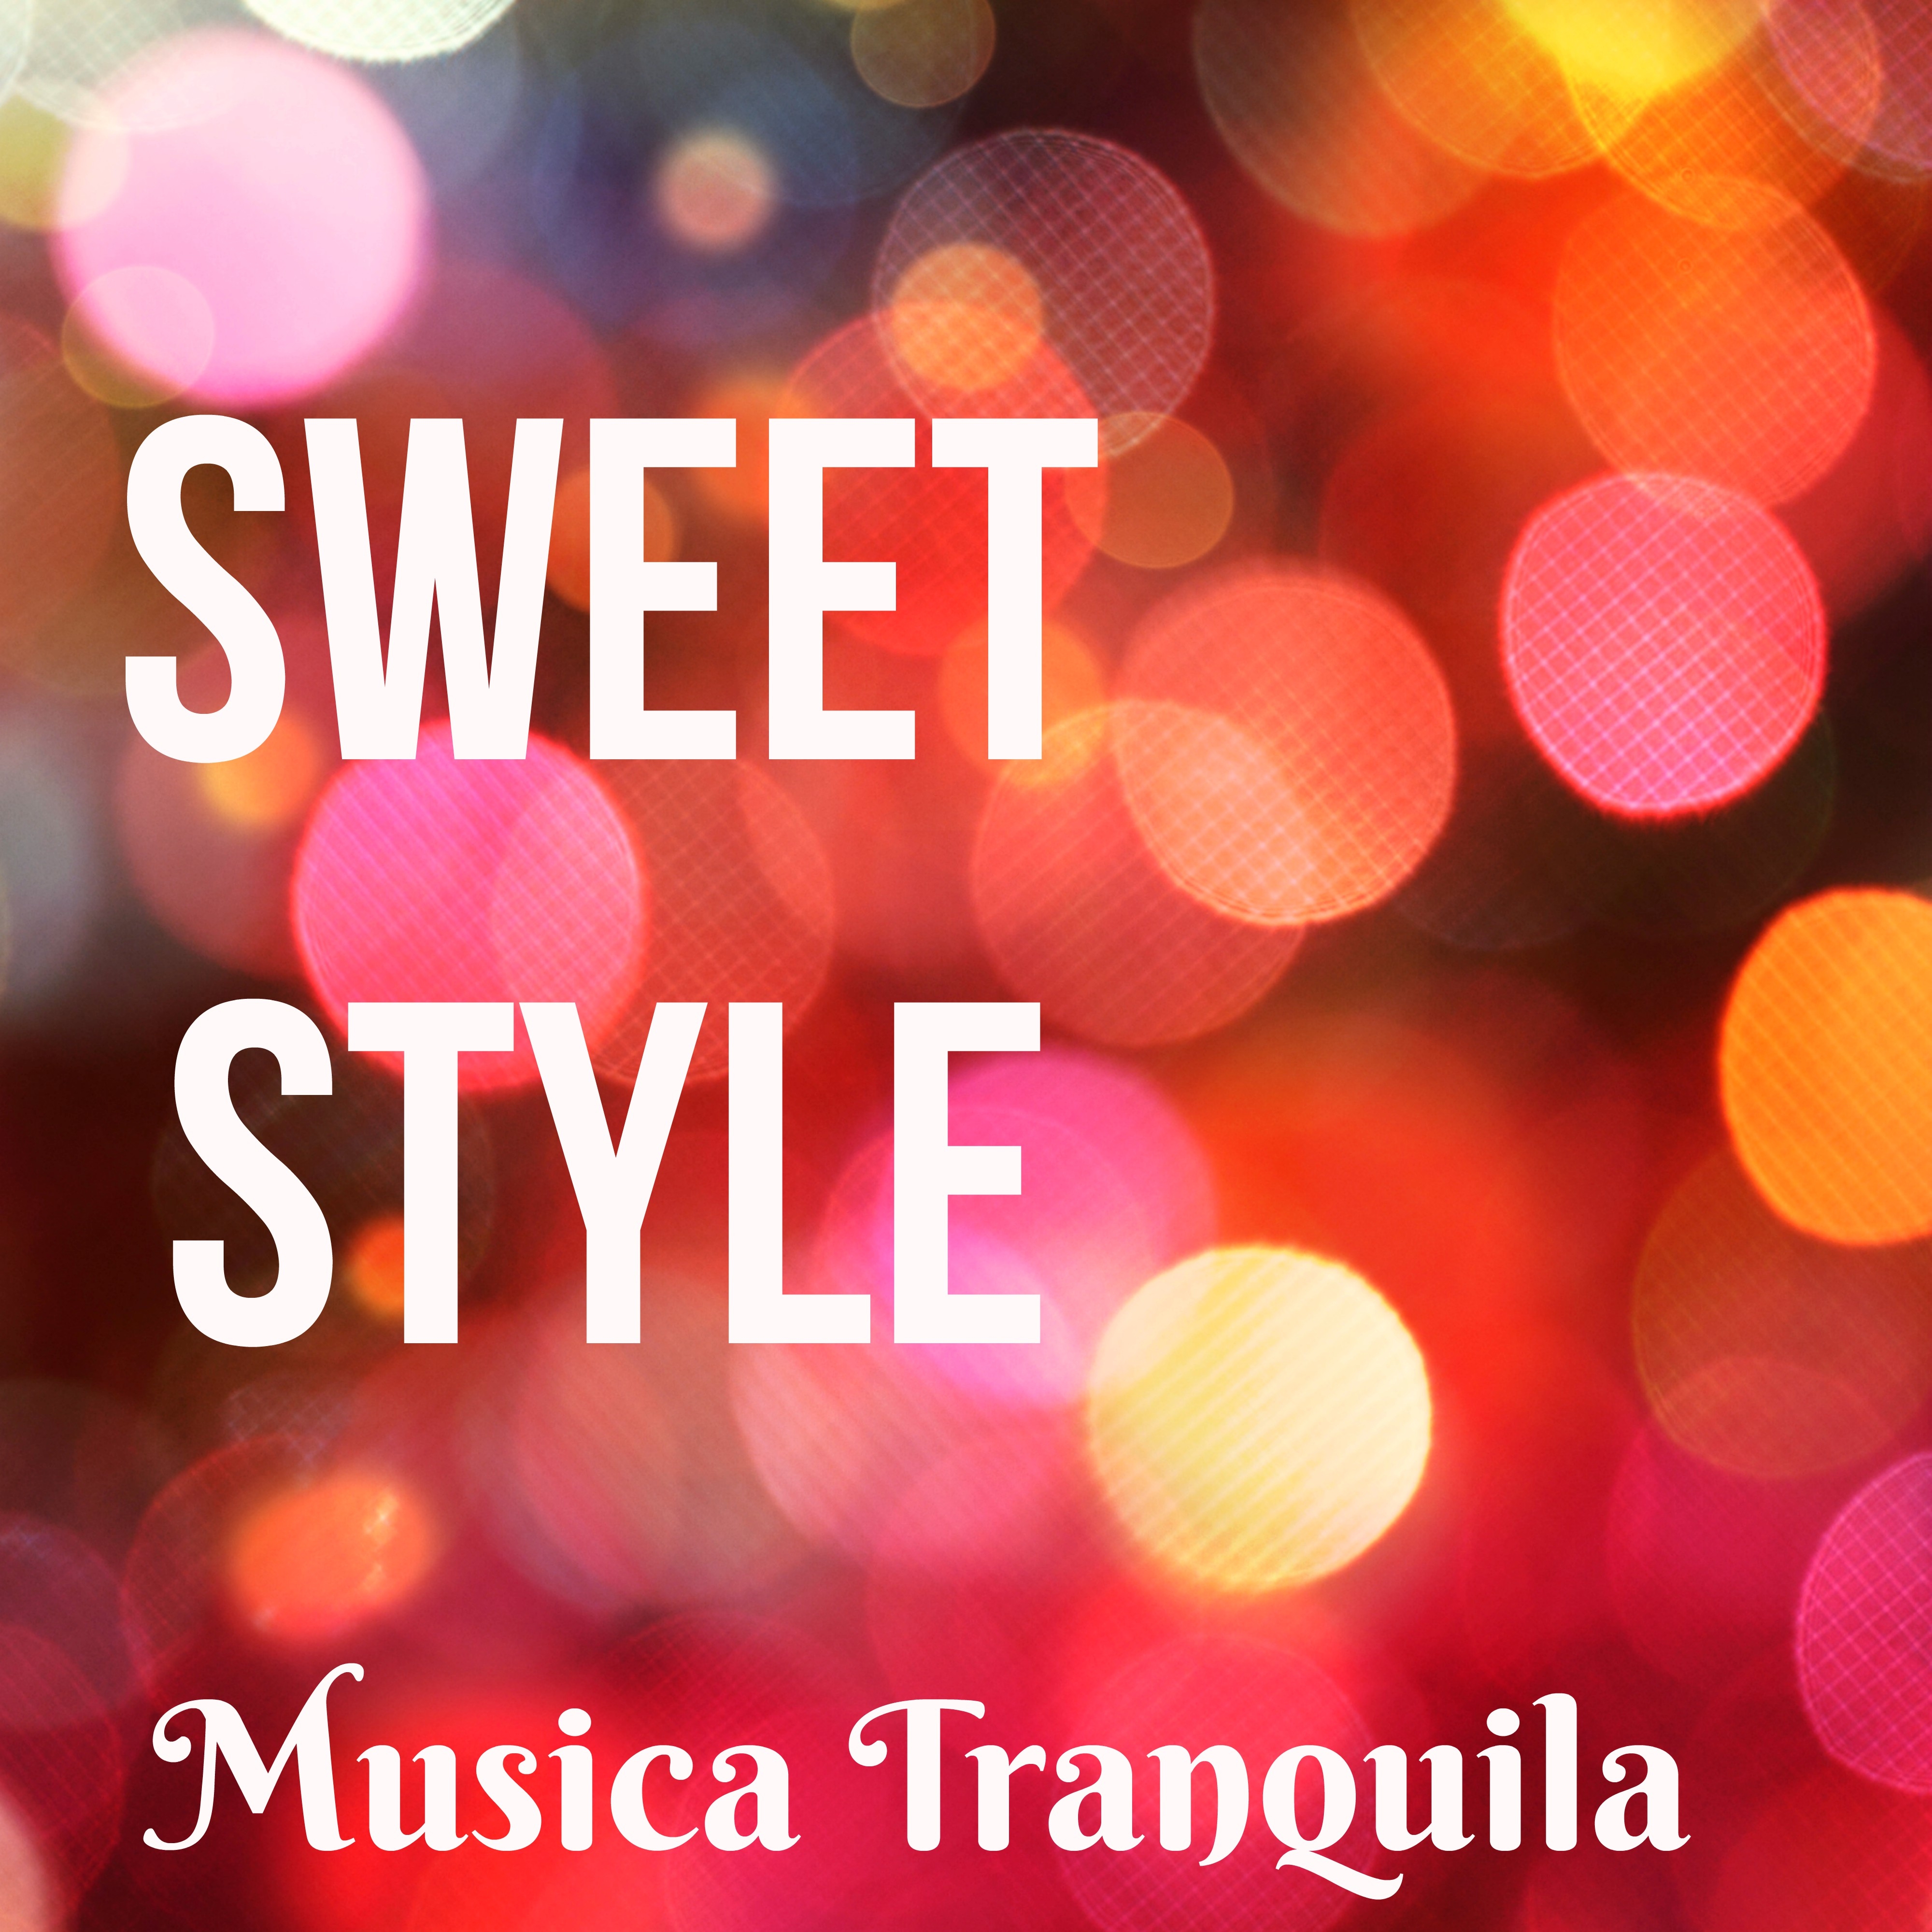 Sweet Style - Musica Tranquila Calma para Limpiar Chakras Meditar Correctamente y Bienestar con Sonidos Naturales Instrumentales Tradicionales